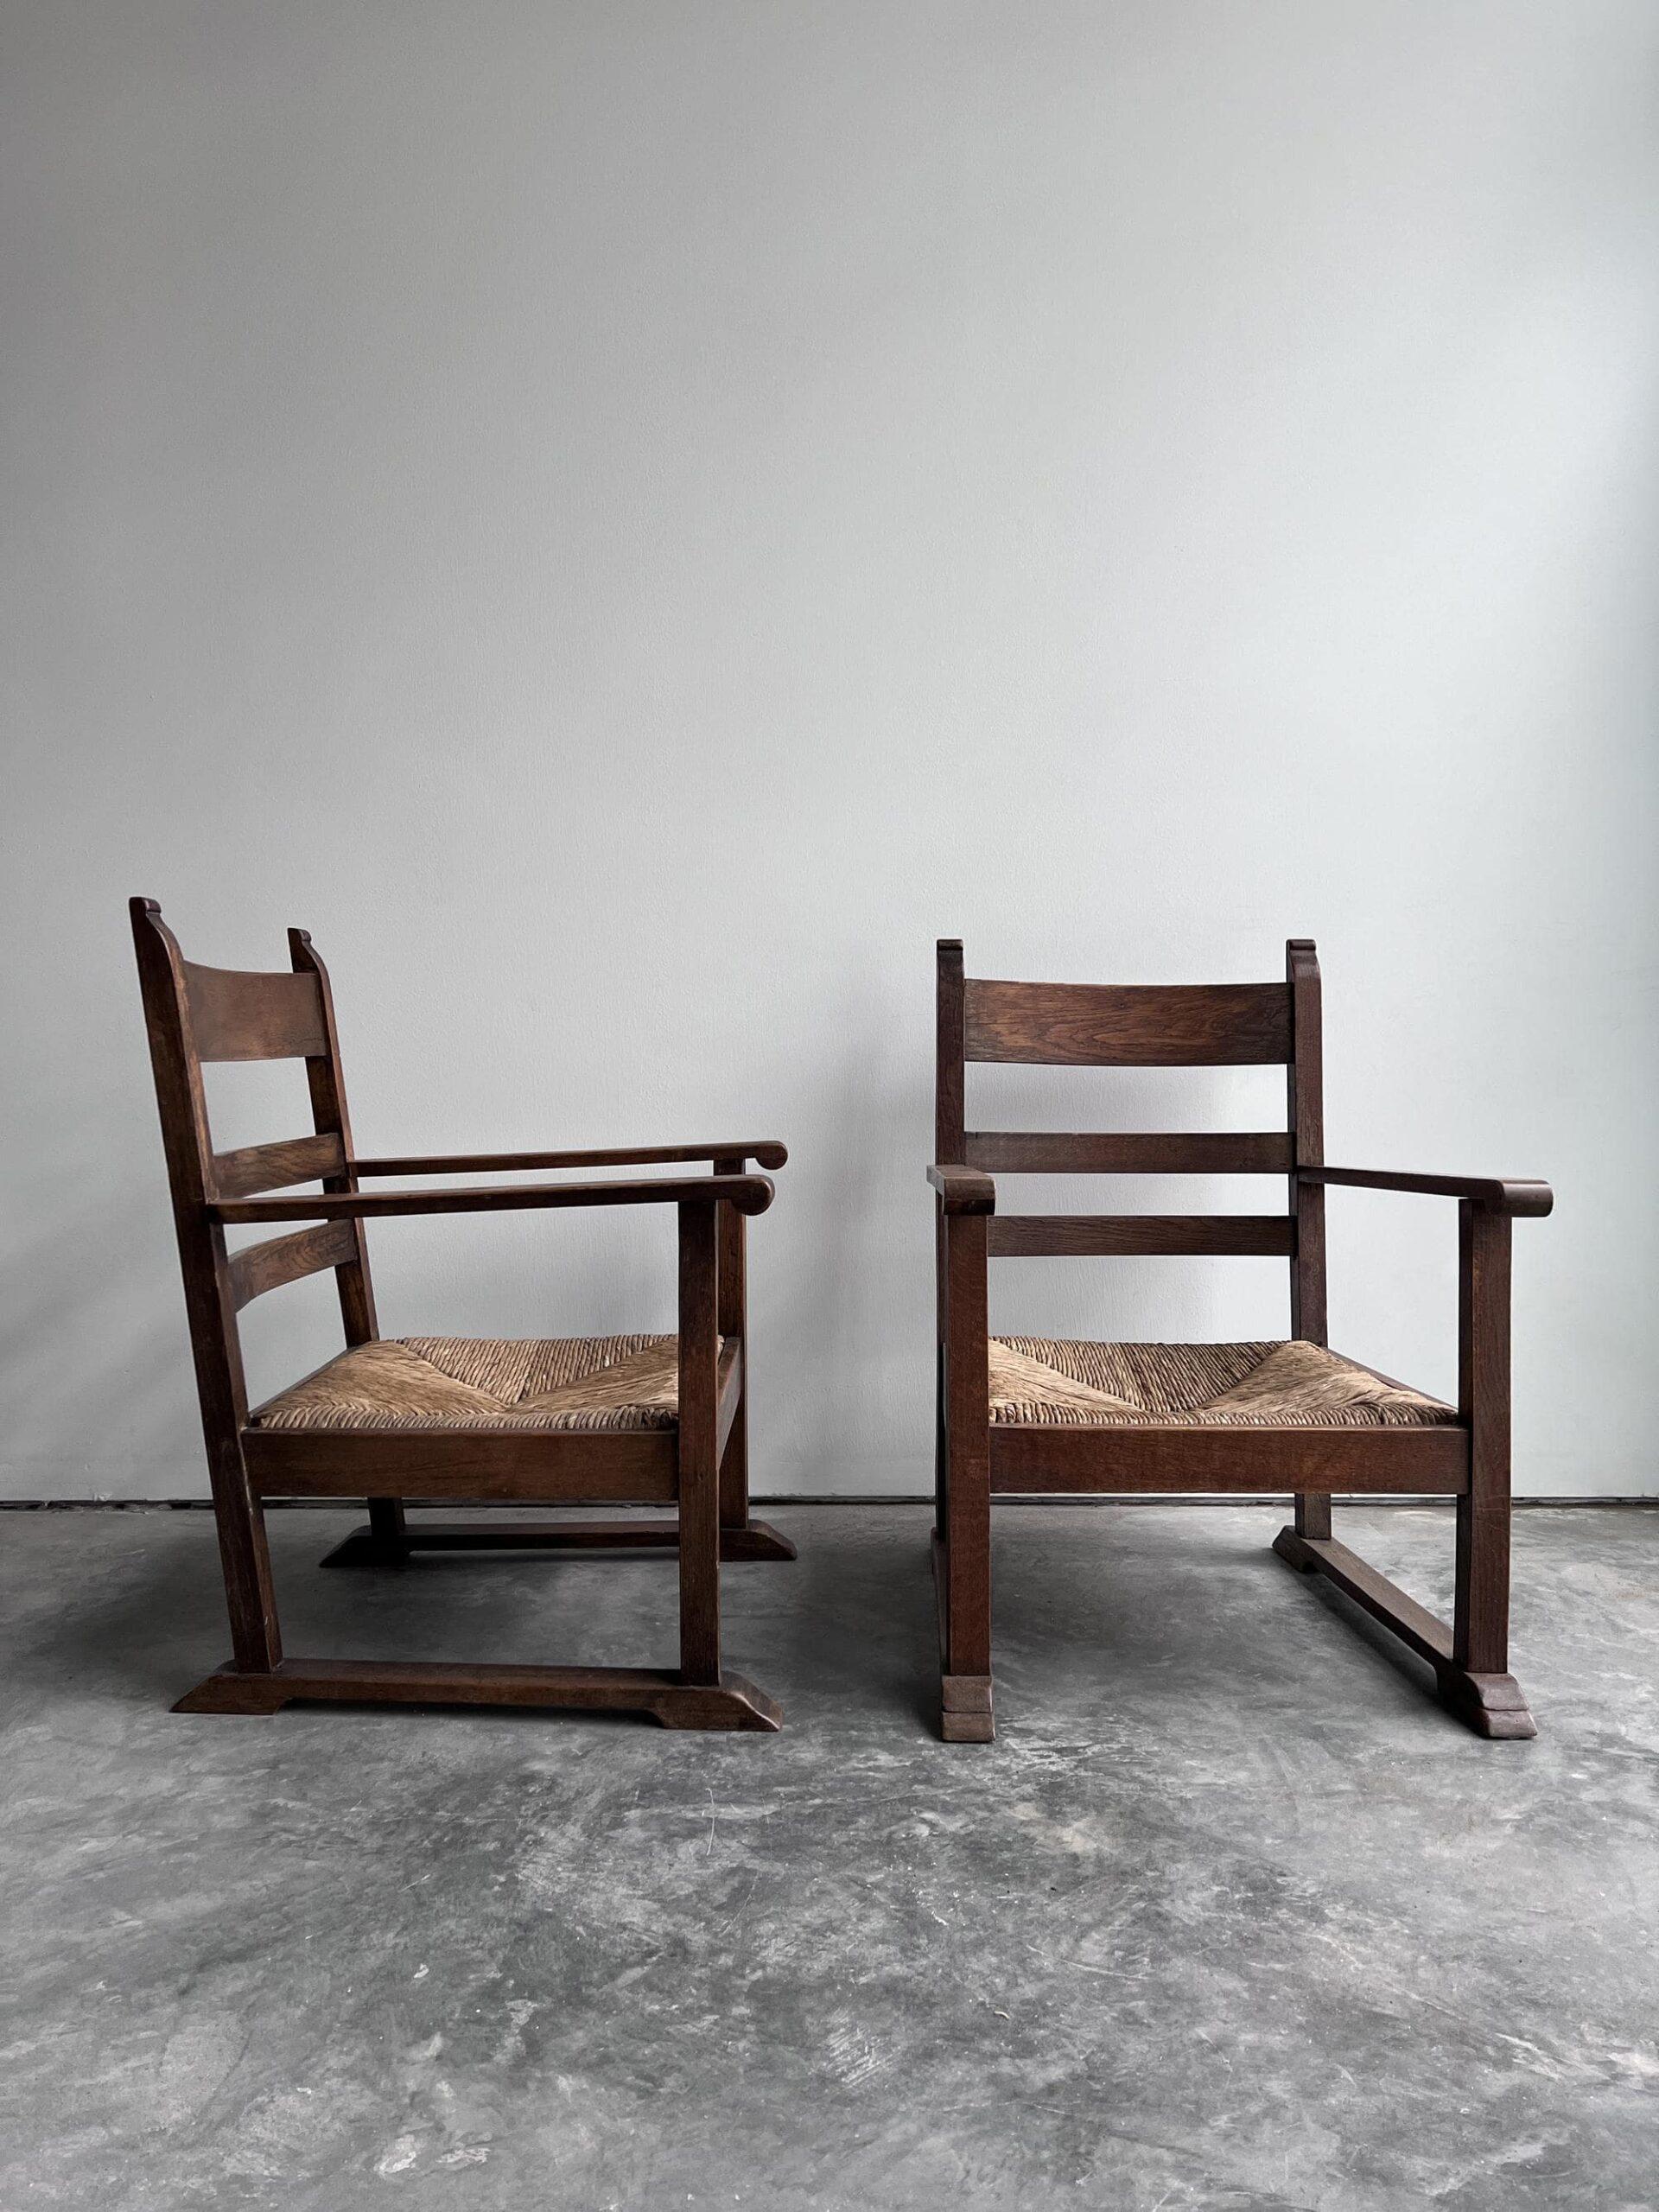 Une paire unique de chaises basses hollandaises du début du 20e siècle avec des sièges en jonc d'origine et des cadres en chêne massif. Ils étaient vraisemblablement destinés à être utilisés par le foyer.